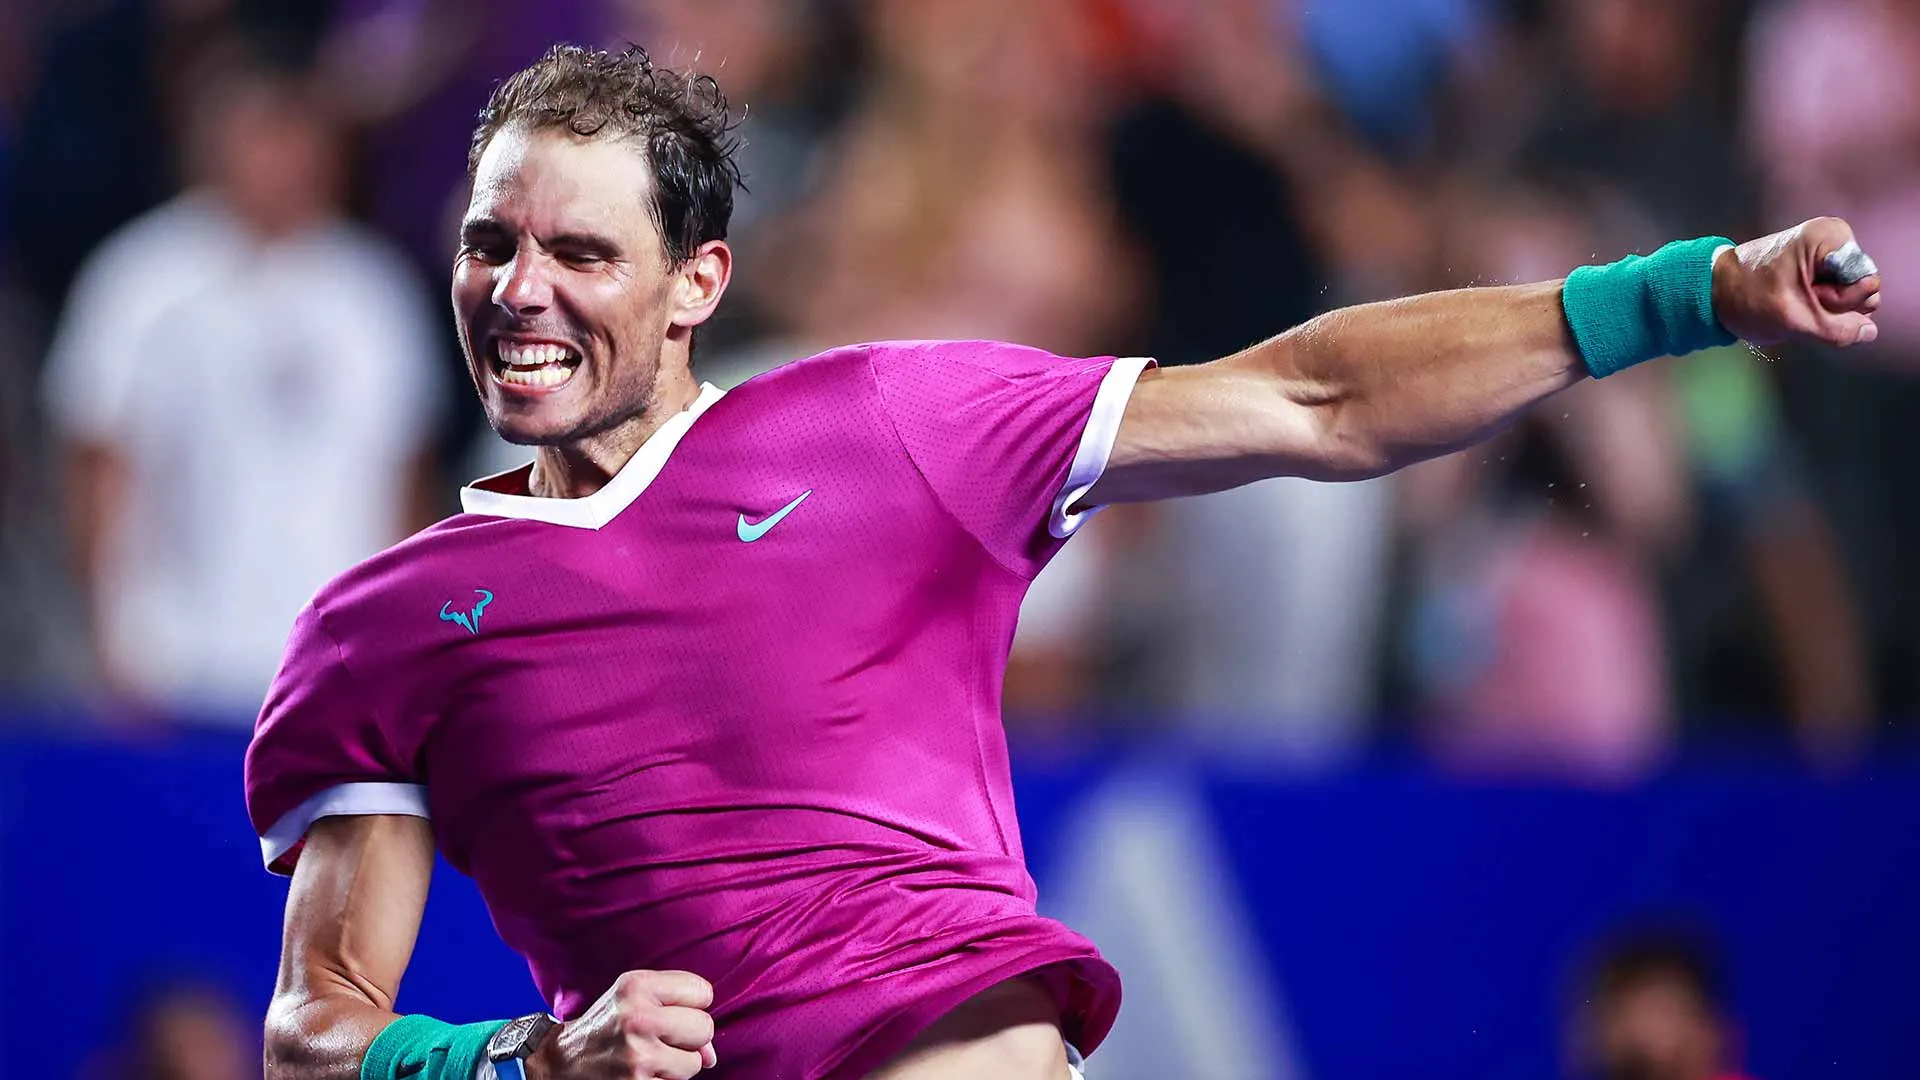 Vô địch Mexican Open, Nadal có được danh hiệu thứ 2 trong mùa giải 2022